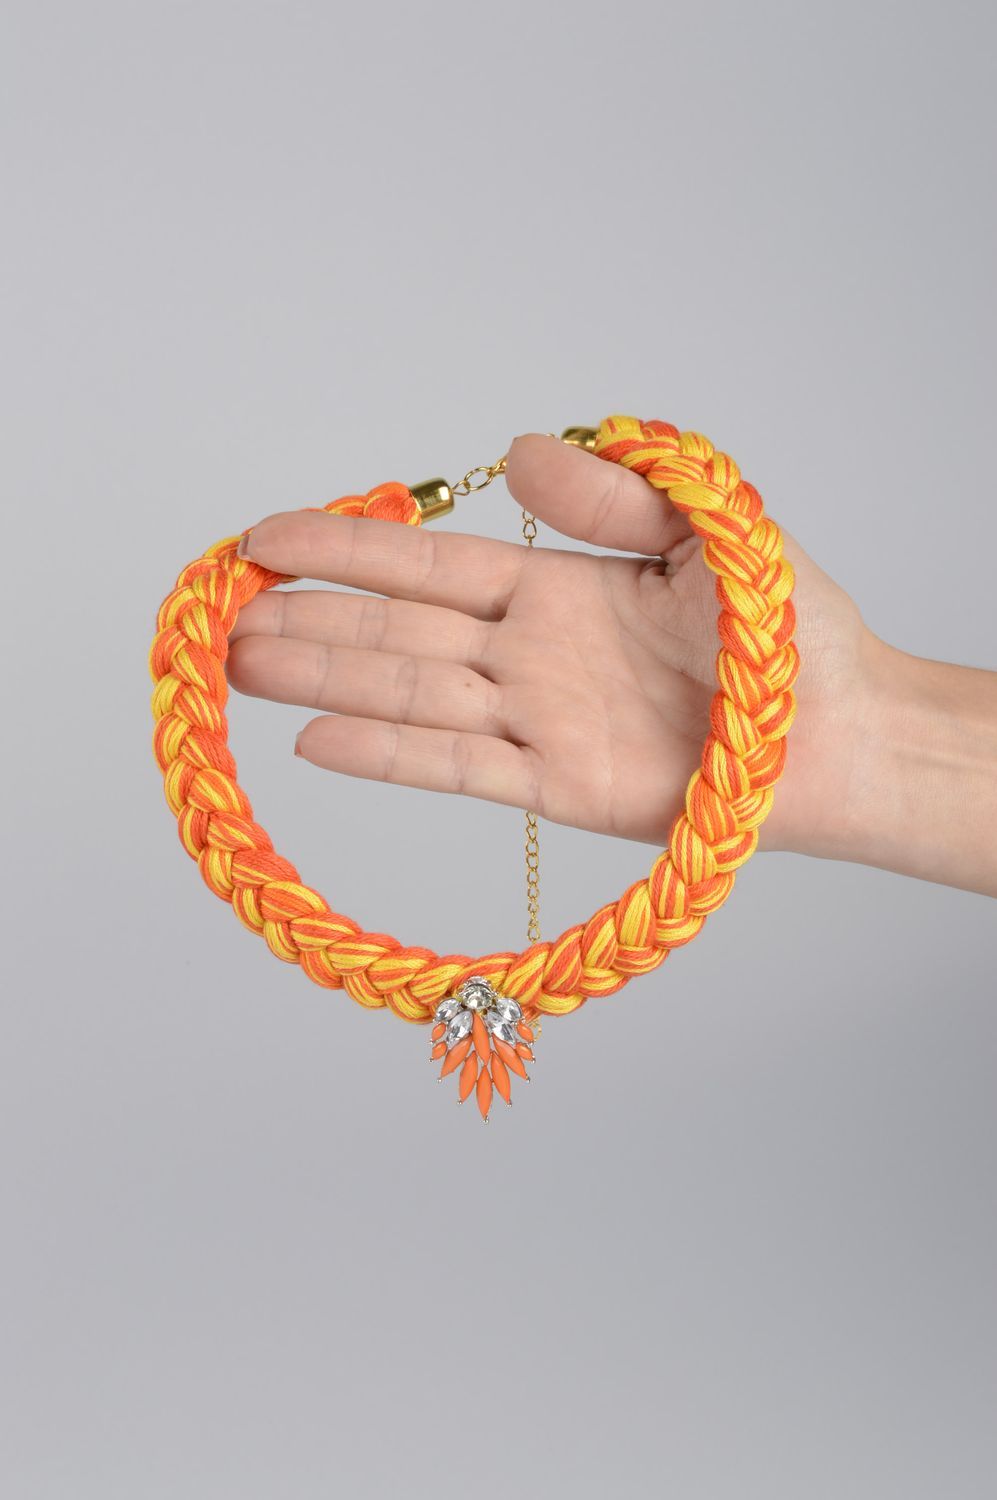 Колье из ниток украшение ручной работы авторская бижутерия оранжевое с желтым фото 5